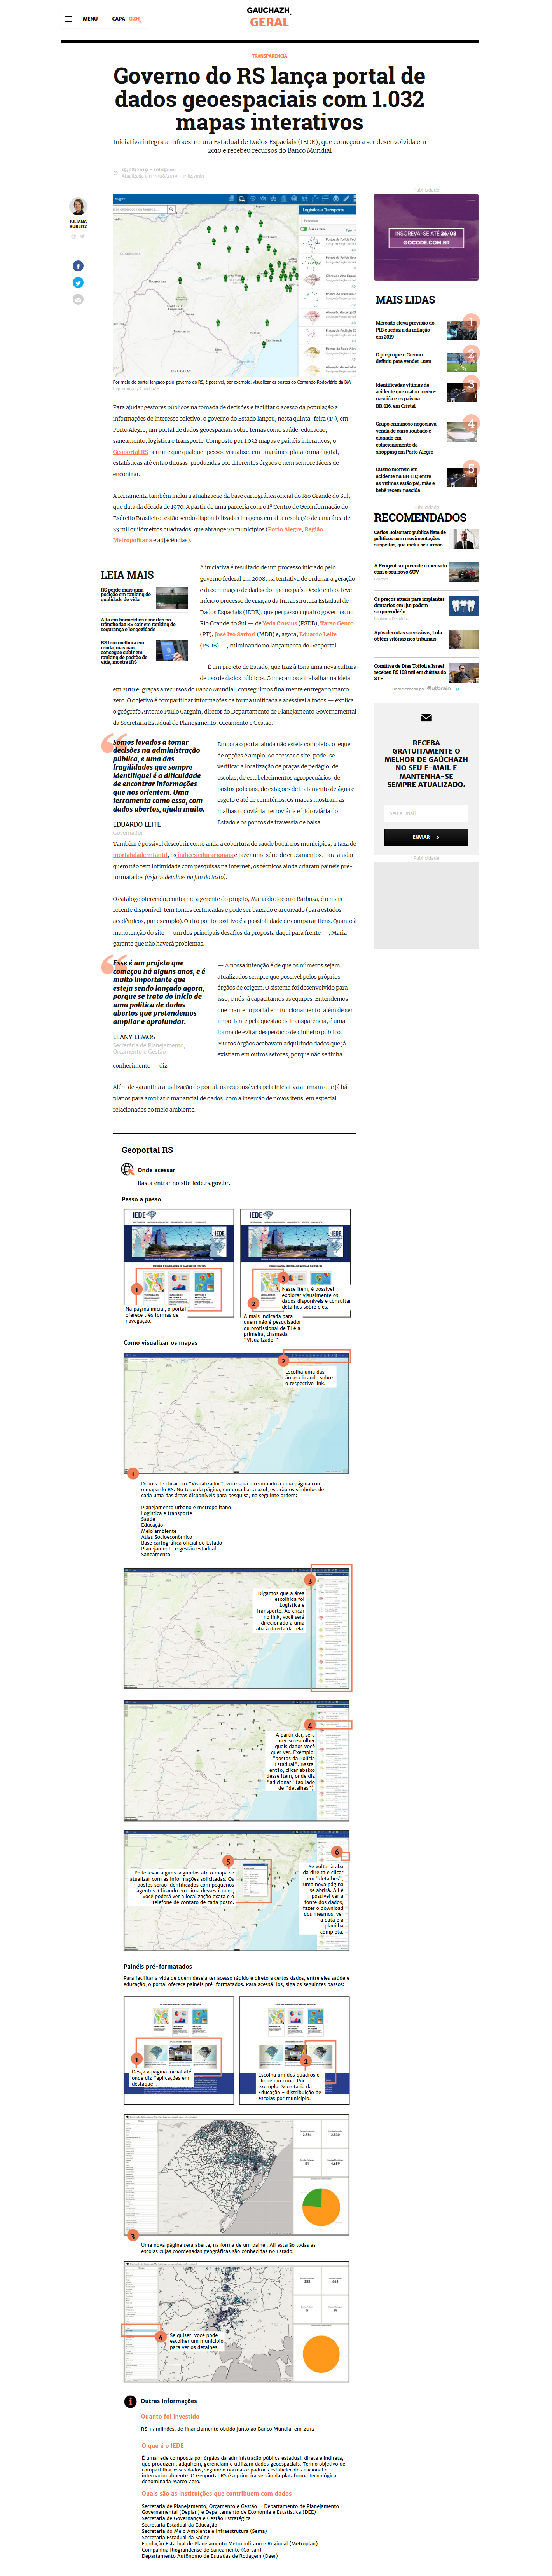 Governo do RS lança portal de dados geoespaciais com 1.032 mapas interativos_GZH.png